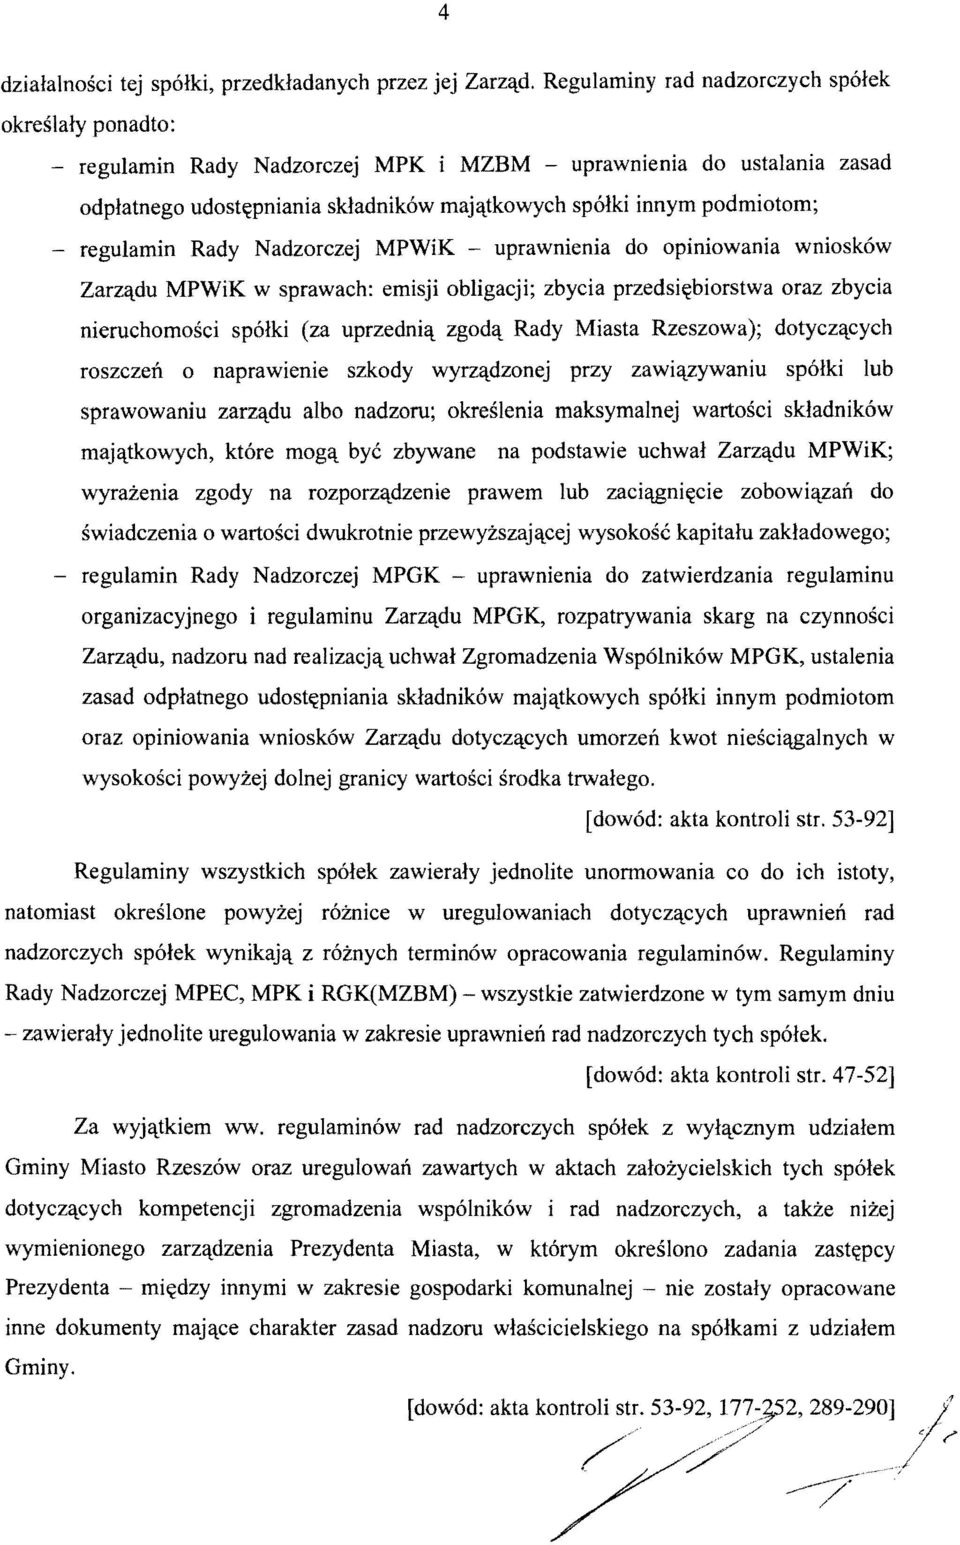 regulamin Rady Nadzorczej MPWiK uprawnienia do opiniowania wniosk6w Zarzqdu MPWiK w sprawach: emisji obligacji; zbycia przedsiltbiorstwa oraz zbycia nieruchomosci spolki (za uprzedni<\. zgod<\.